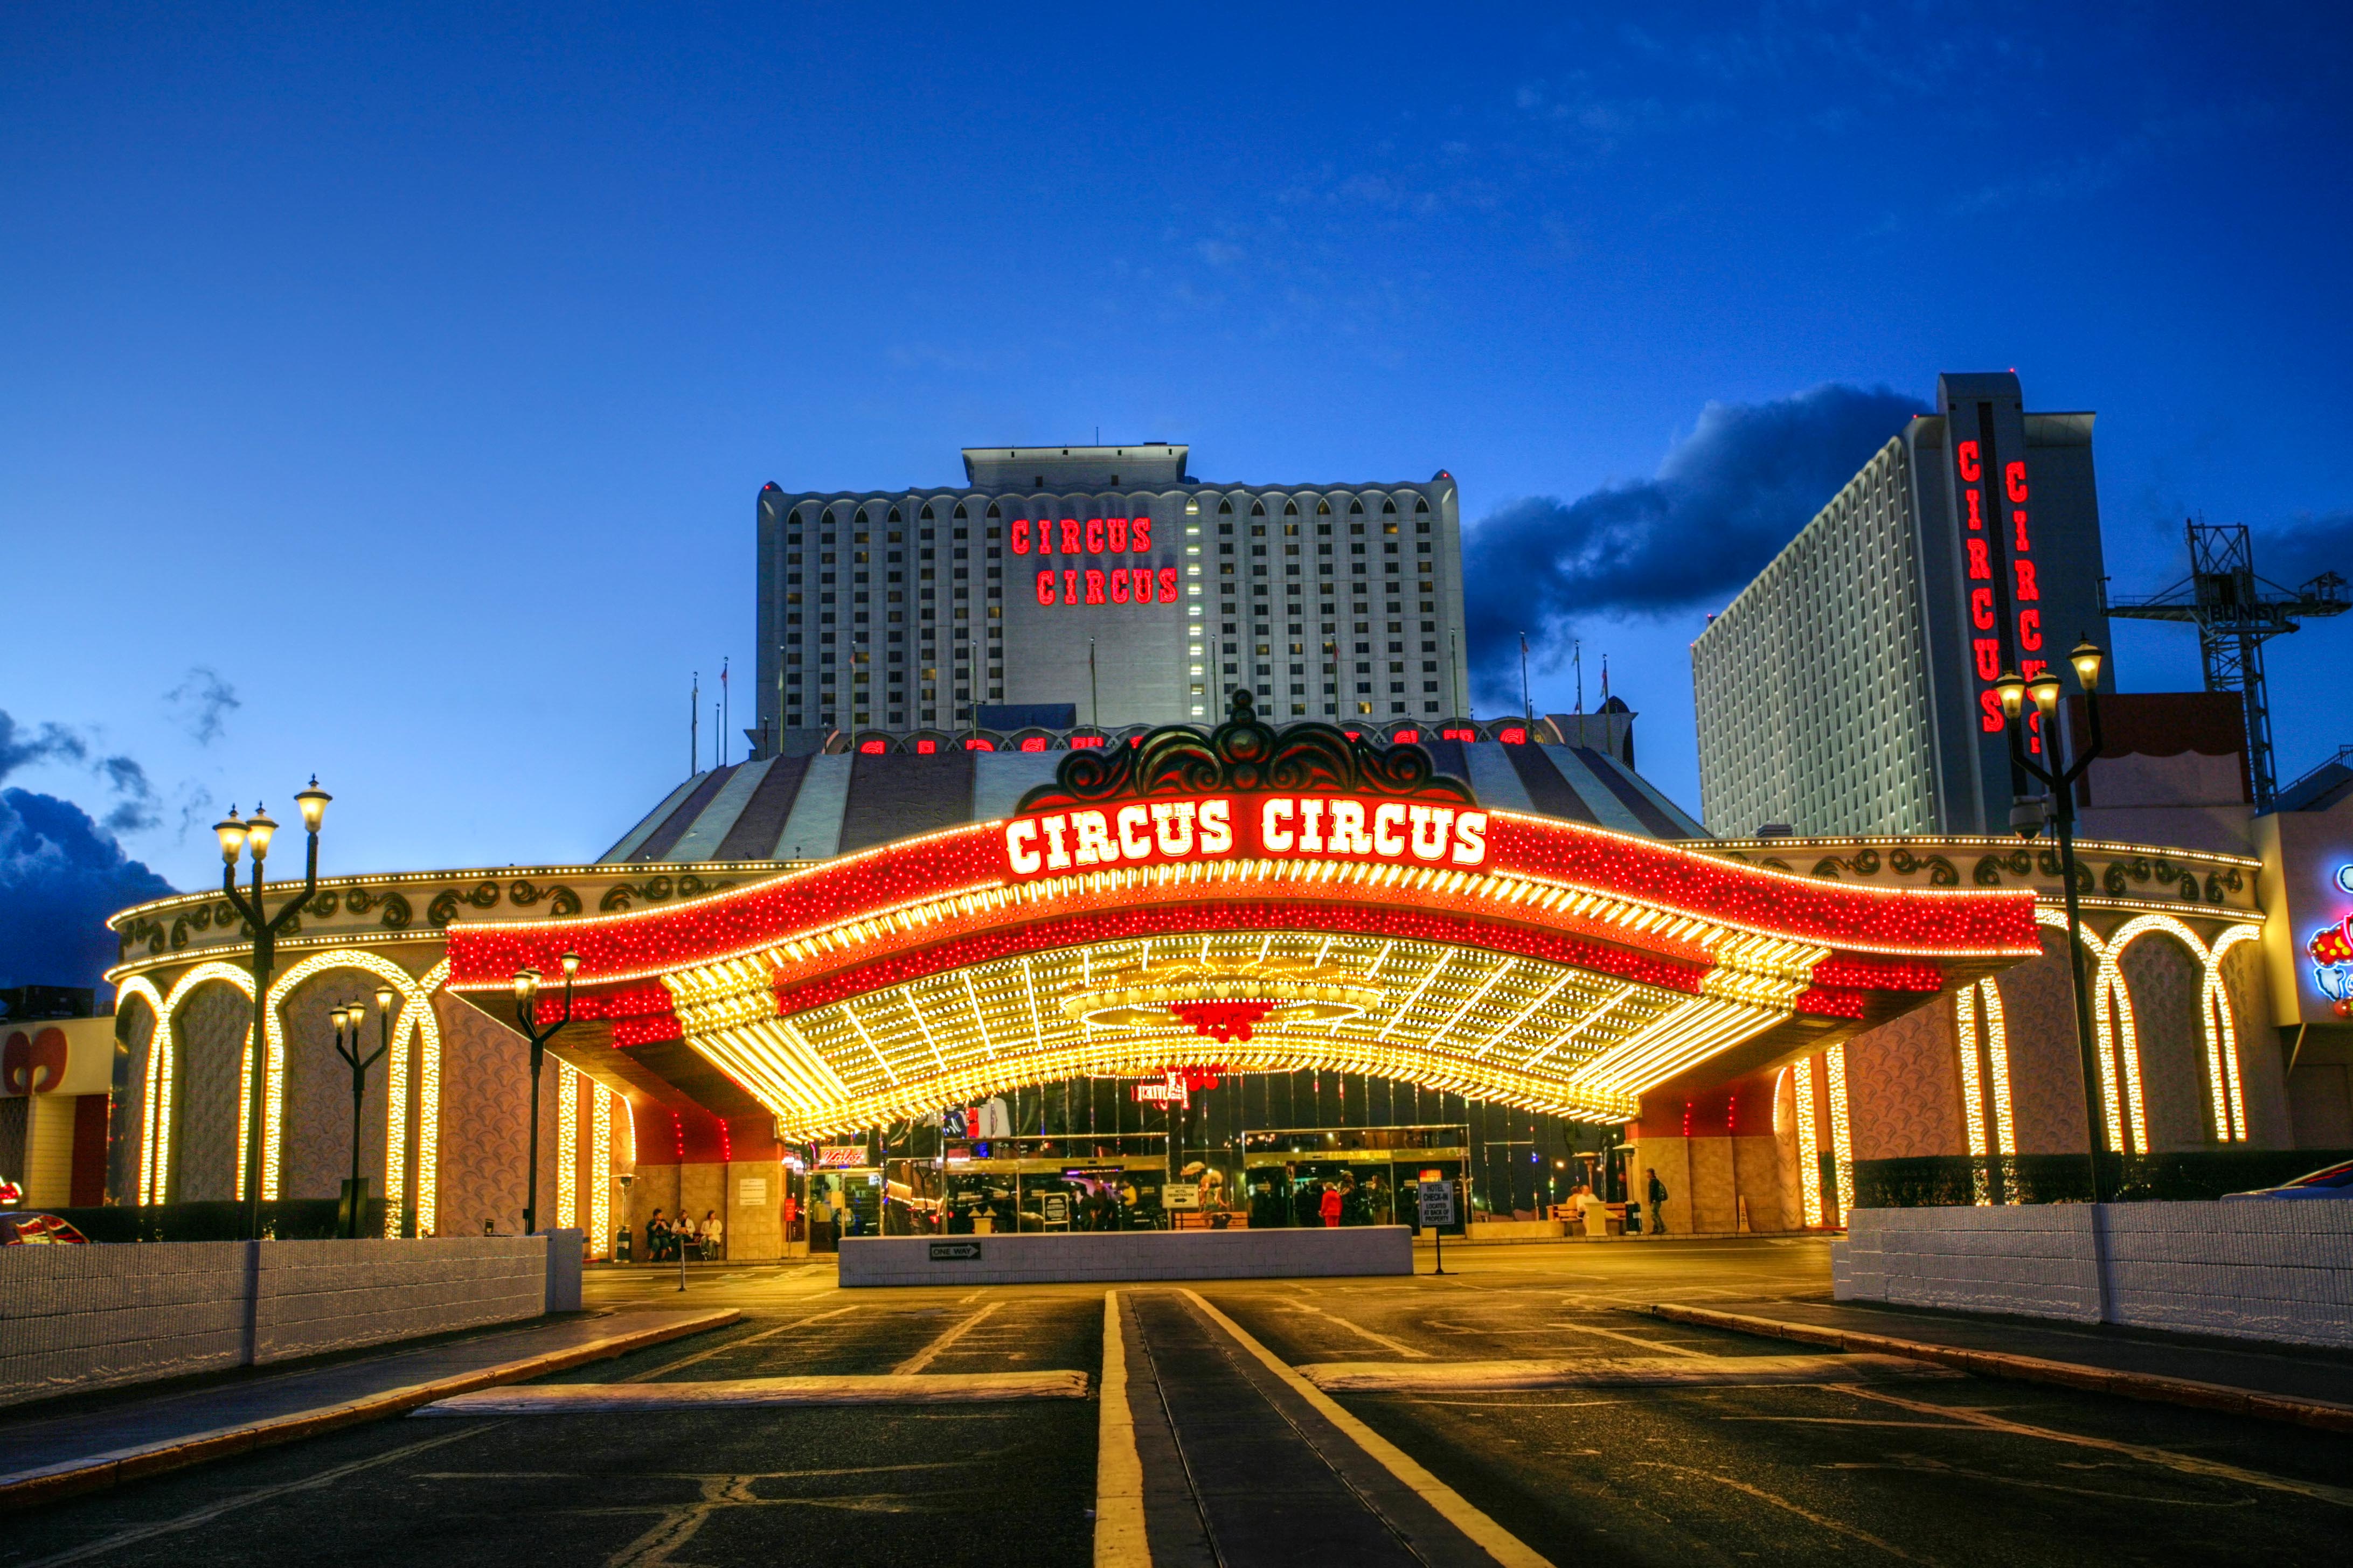 Casino Circus